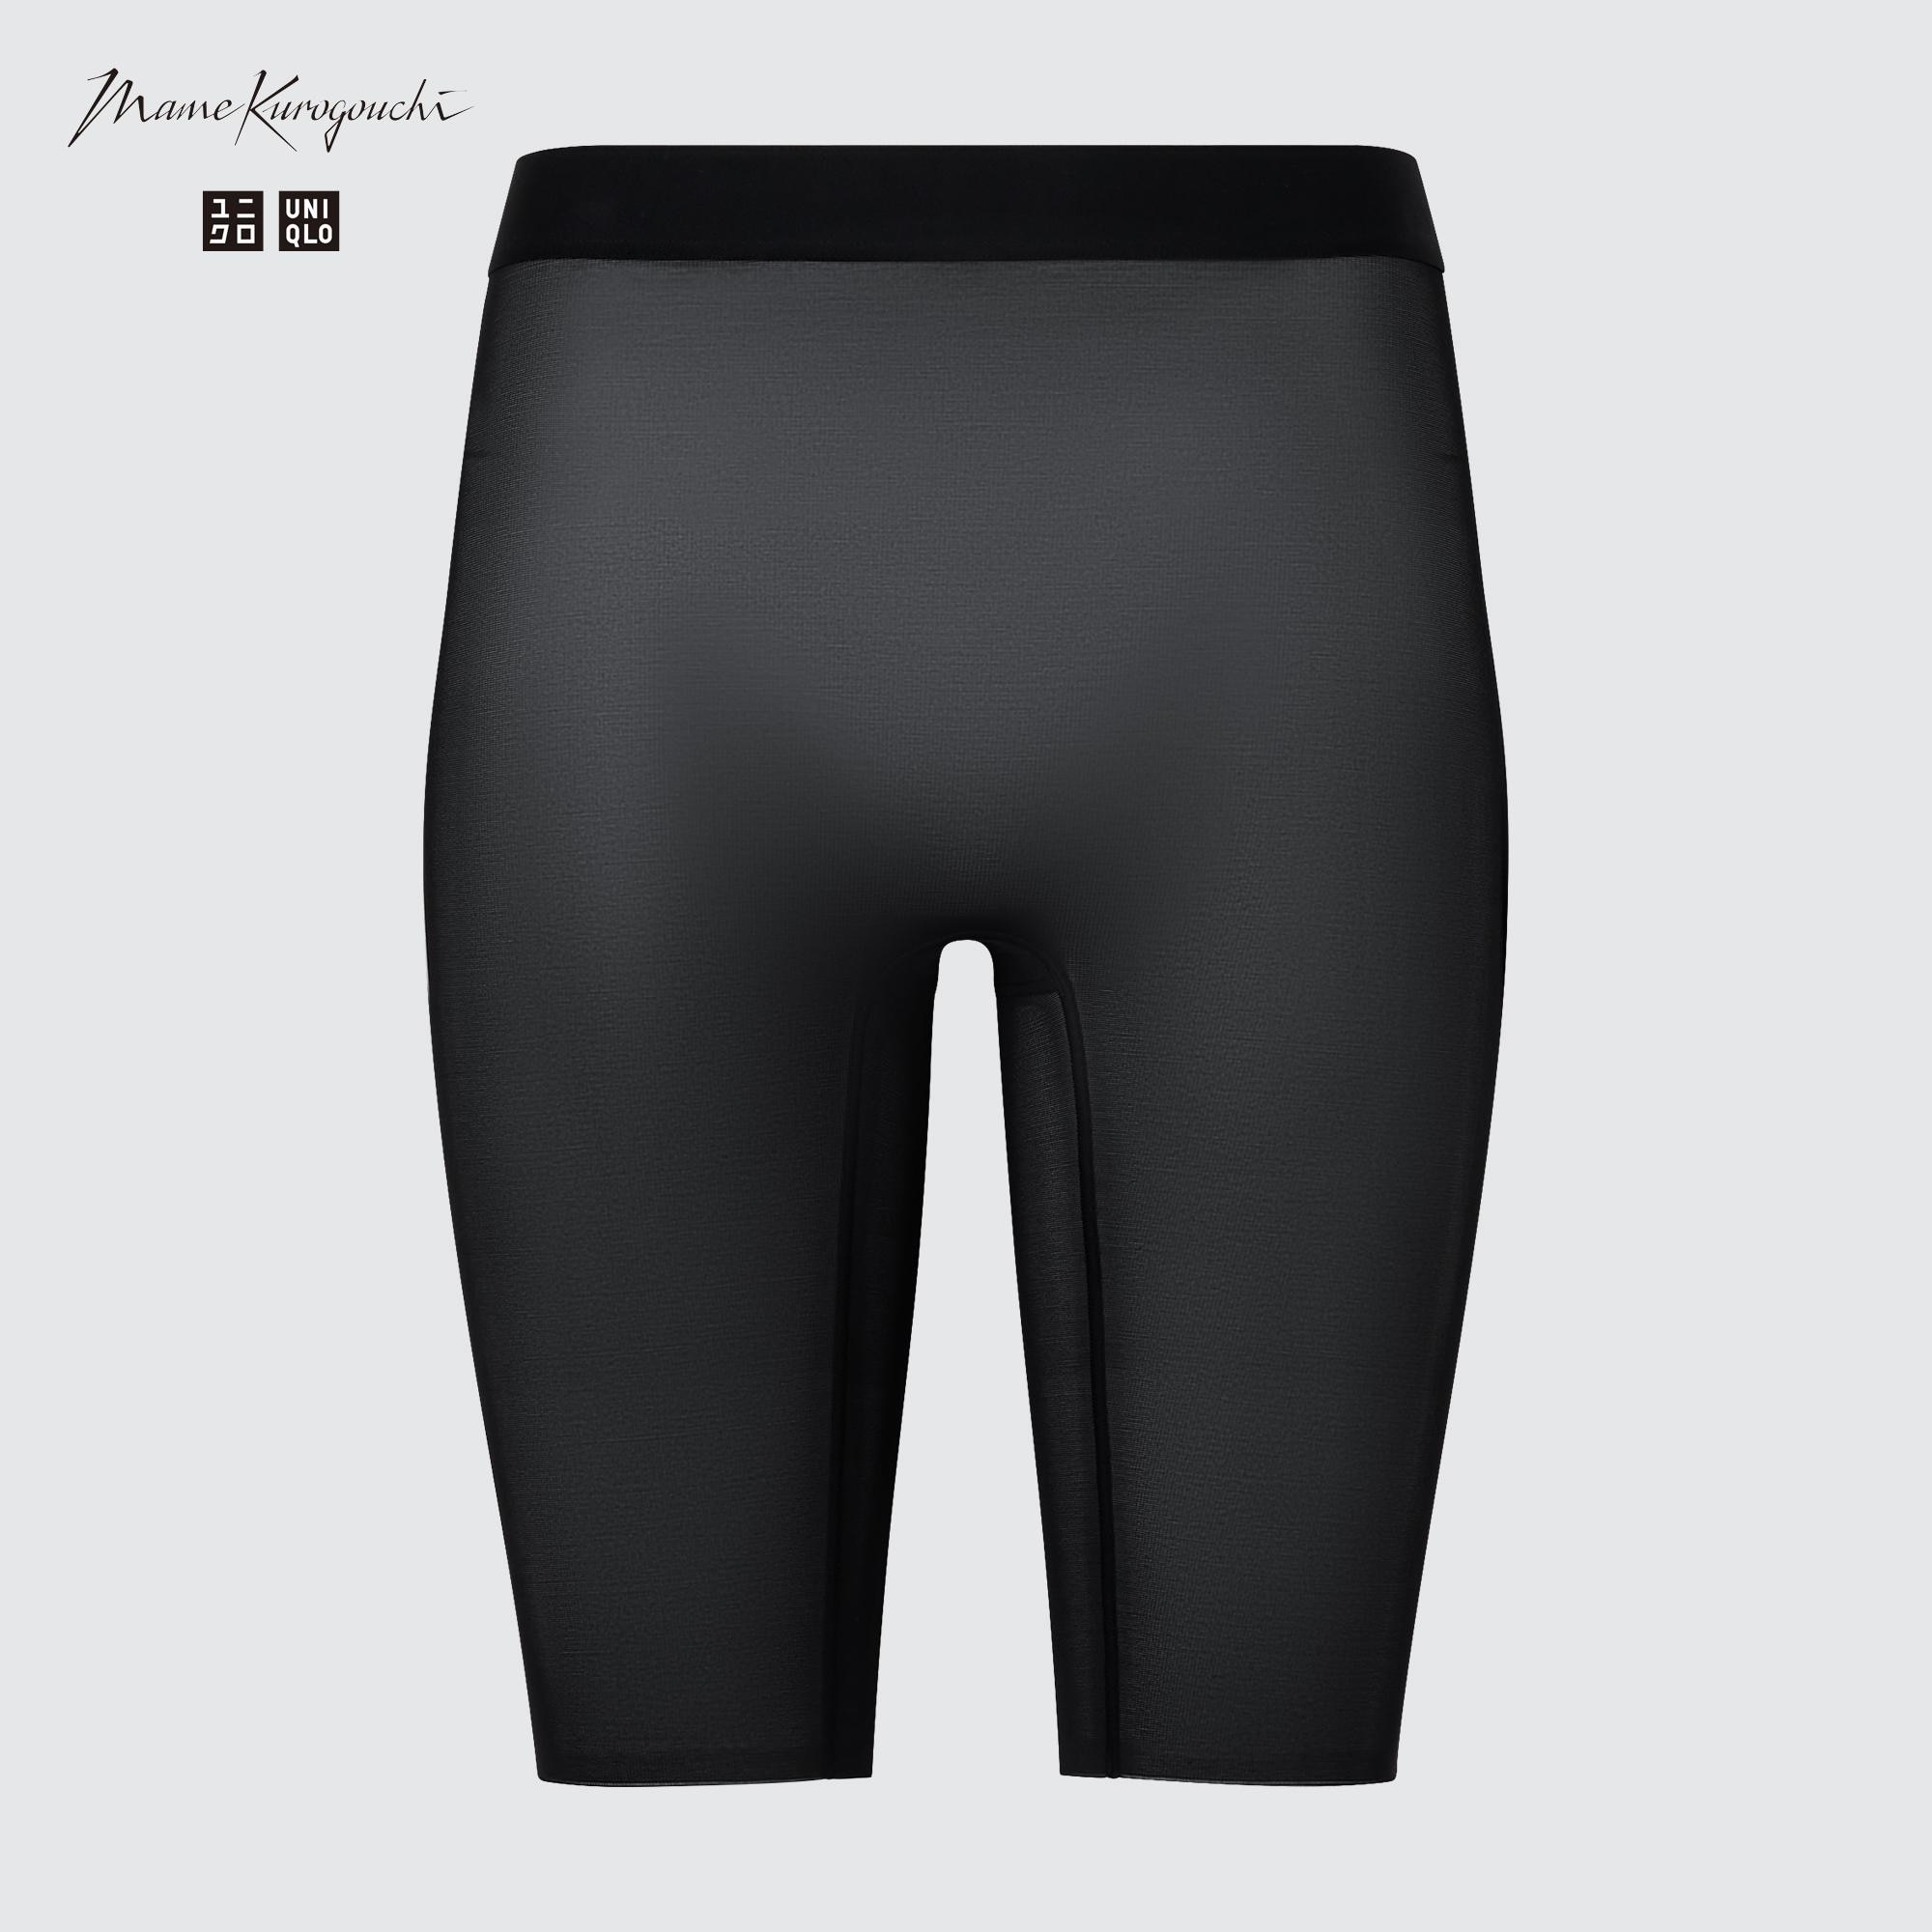 UNIQLO AIRism Body Shaper Non-Lined Half Shorts (Support)